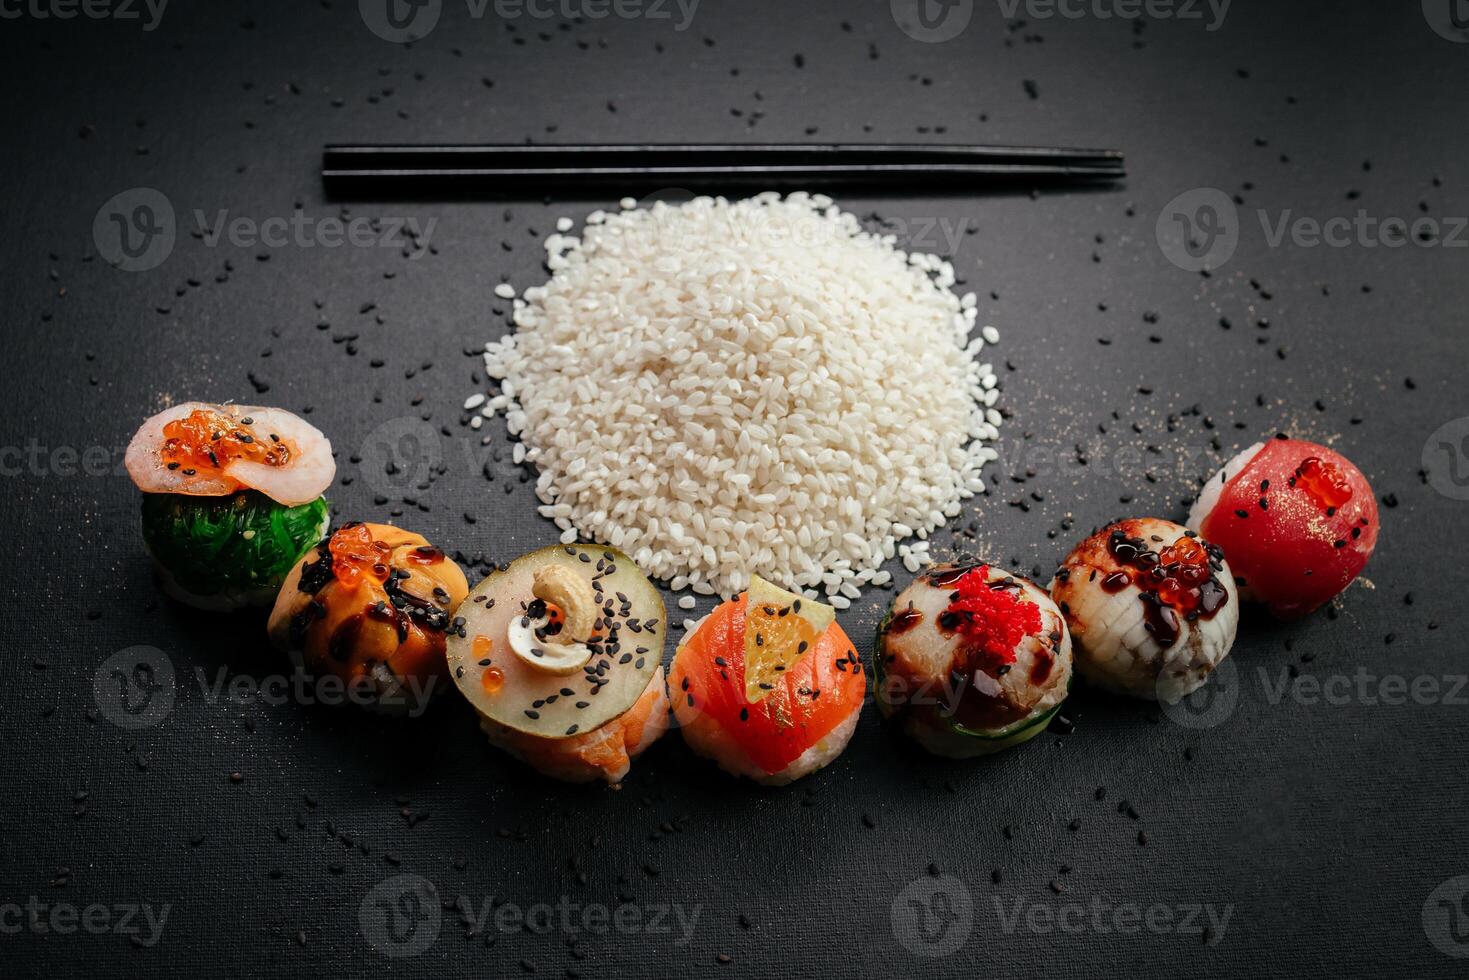 elegancia Satisface sabor como Sushi variedades tomar su sitio en un negro fondo, atractivo conocedores a participar en un visual y gustativo banquete a restaurante foto